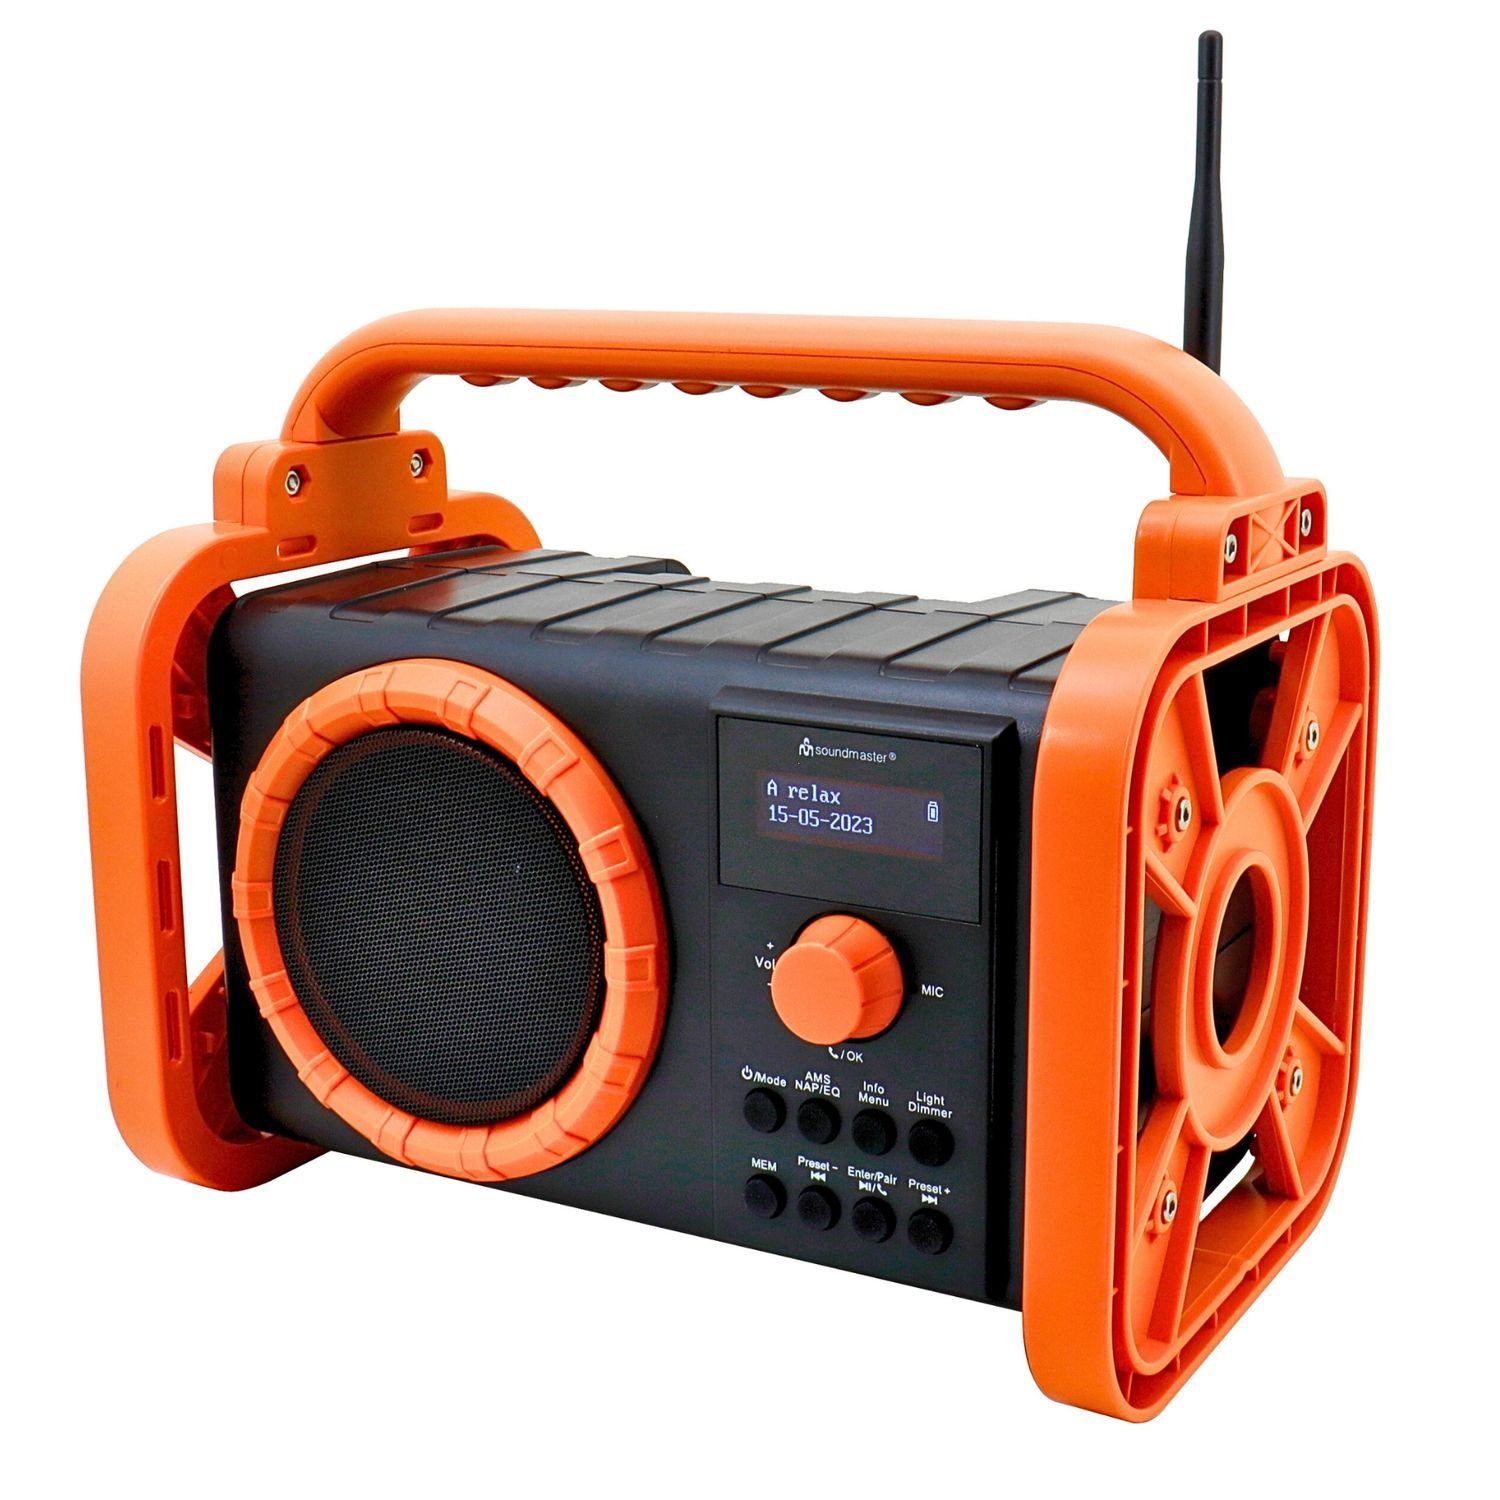 Soundmaster DAB80OR Baustellenradio DAB+ Bluetooth Akku IP44 spritzwassergeschützt Baustellenradio (DAB+, MW, PLL-UKW, FM, 5 W, Baustellenradio, ABS-Gehäuse, IP44 Spritzwasserschutz, LED Lampe, Akku)